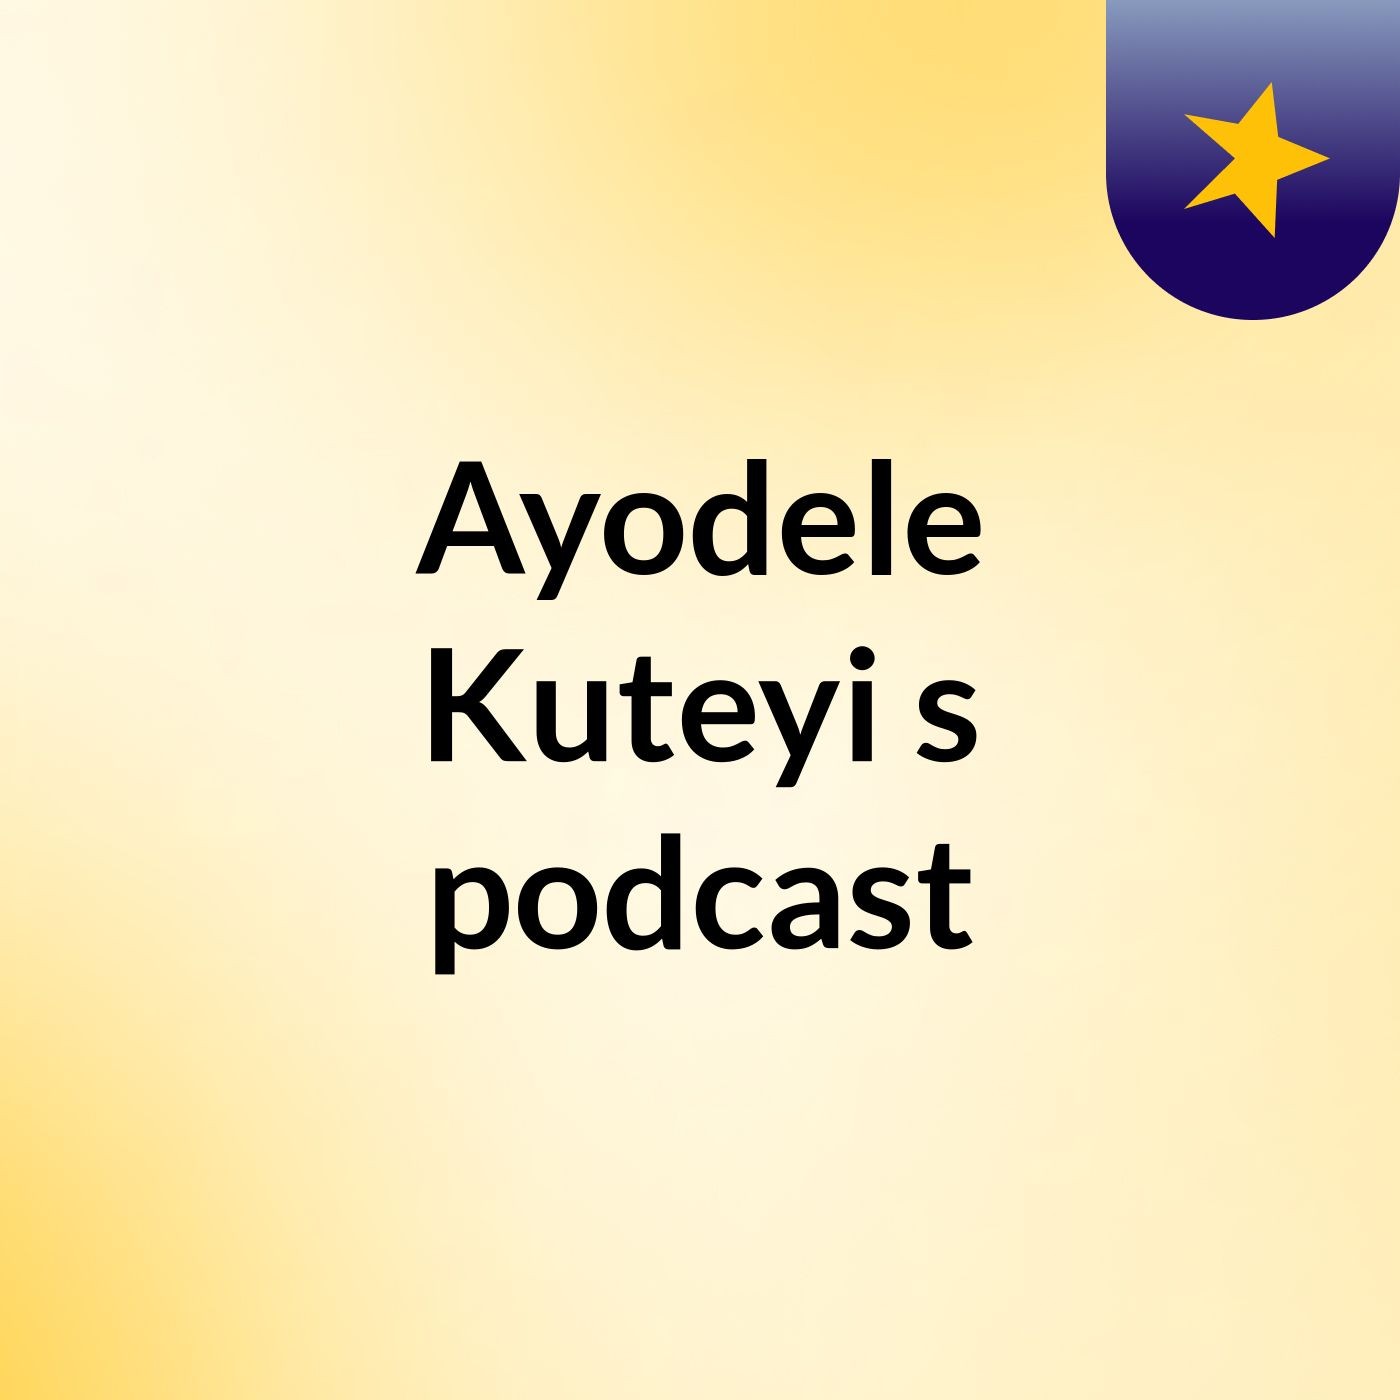 Episode 10 - Ayodele Kuteyi's podcast